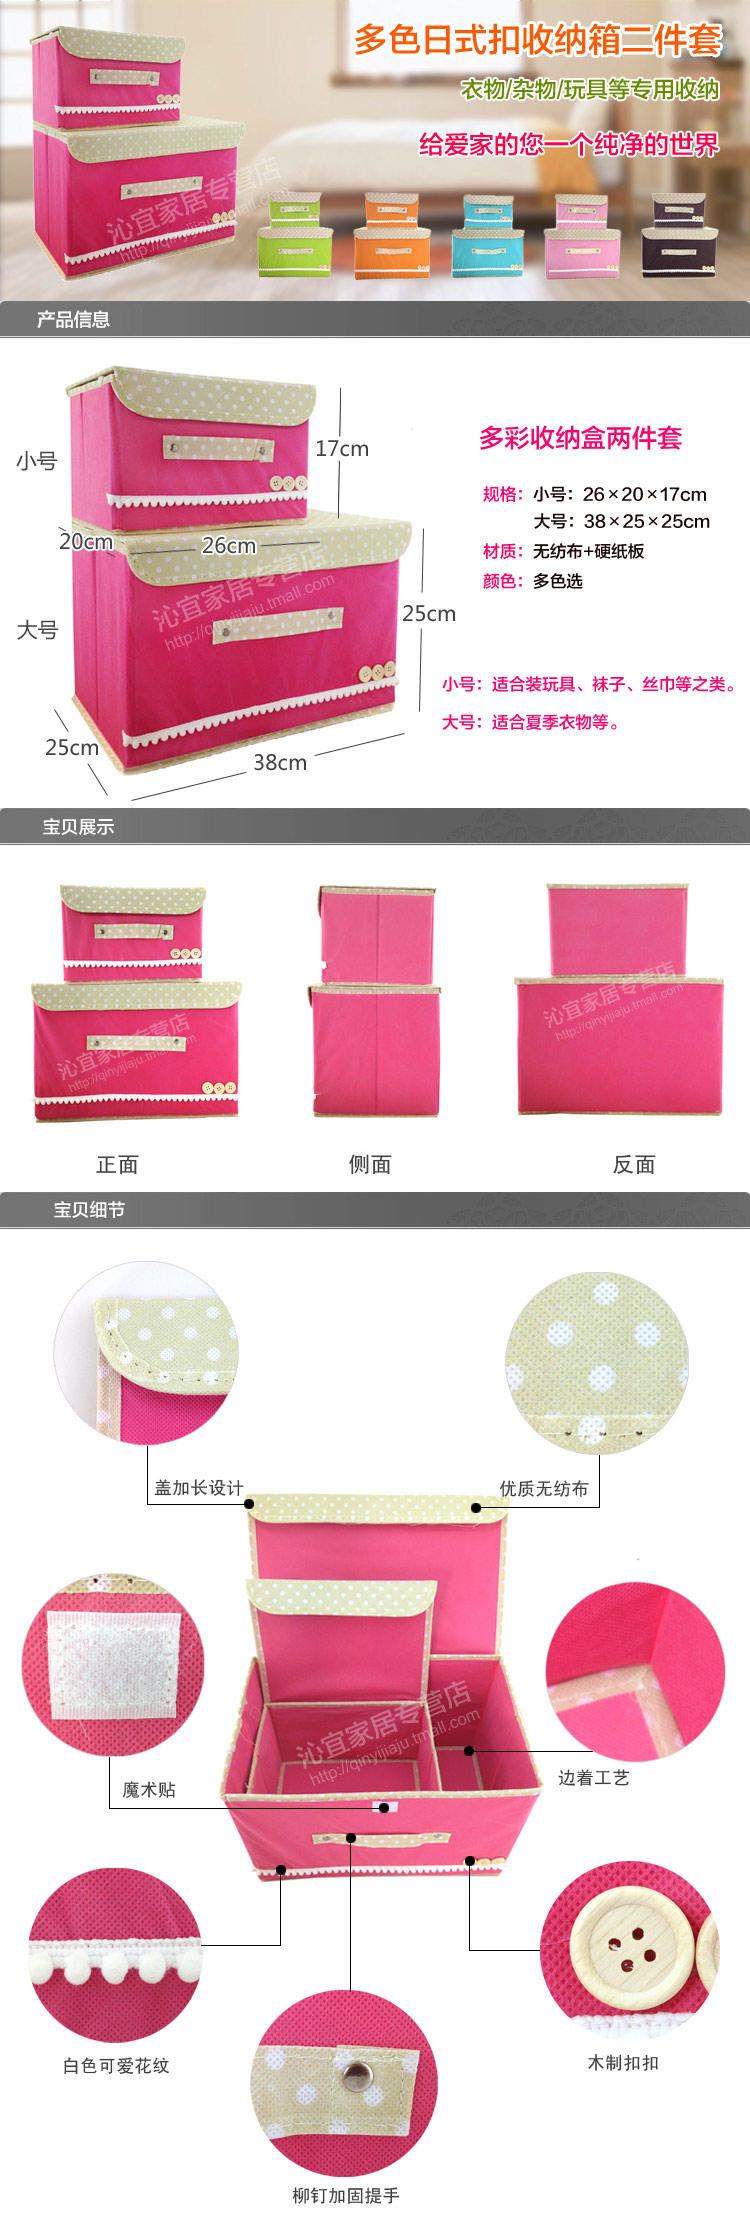 珂宜收纳箱两件套日式扣纯色收纳整理箱多色可选